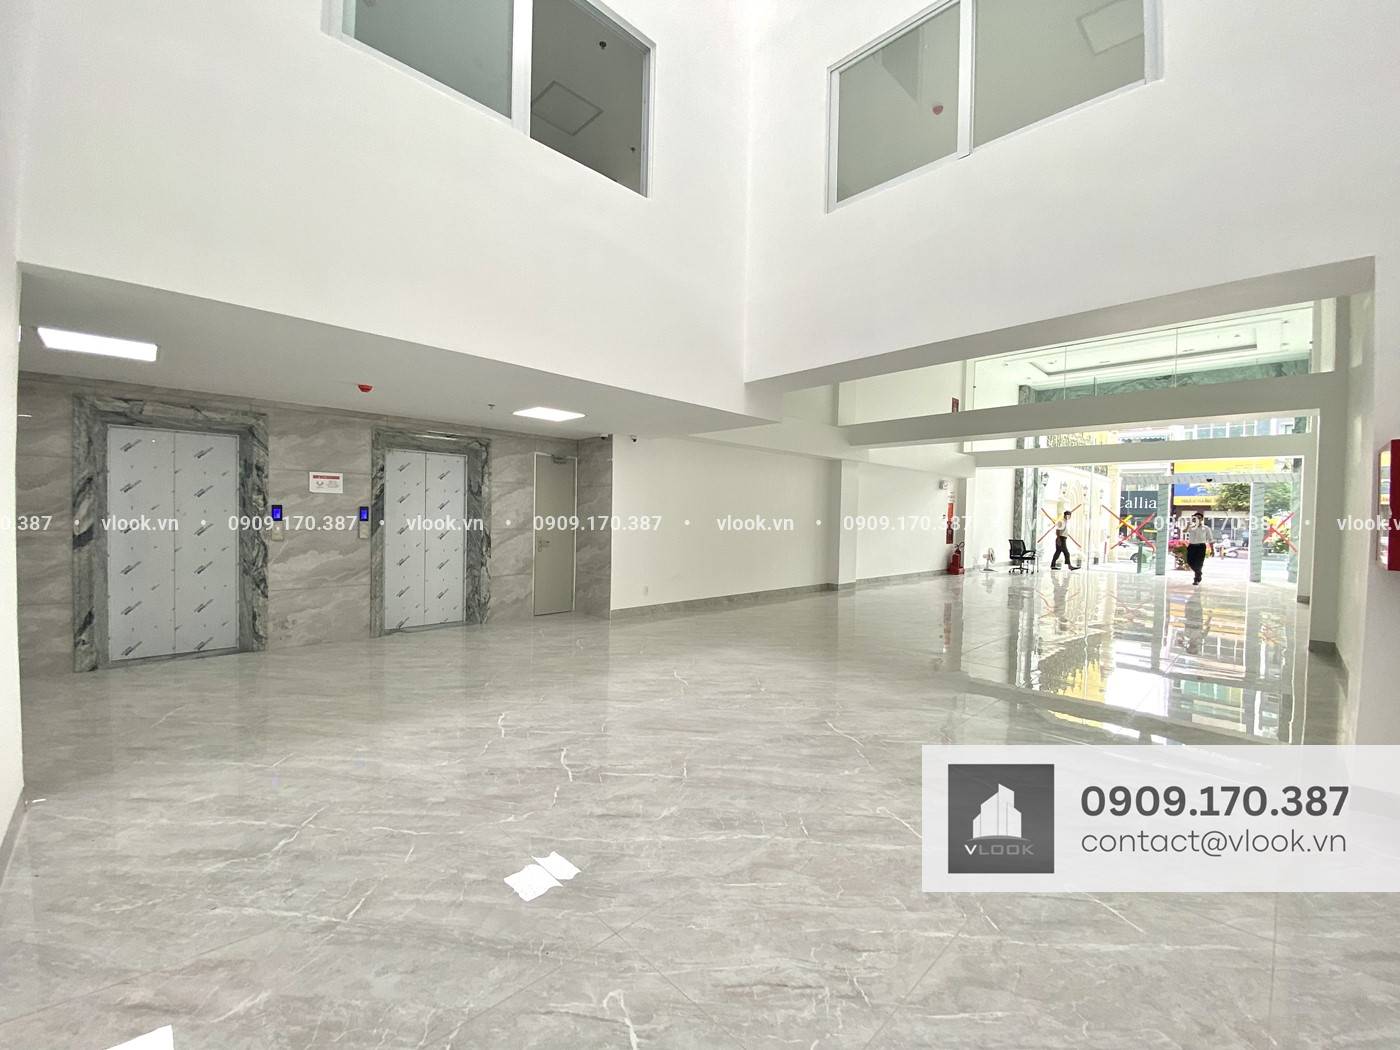 Cao ốc văn phòng cho thuê tòa nhà Savista Realty 90 Lê Văn Duyệt, Phường 01, Quận Bình Thạnh, TPHCM - vlook.vn - 0909170387